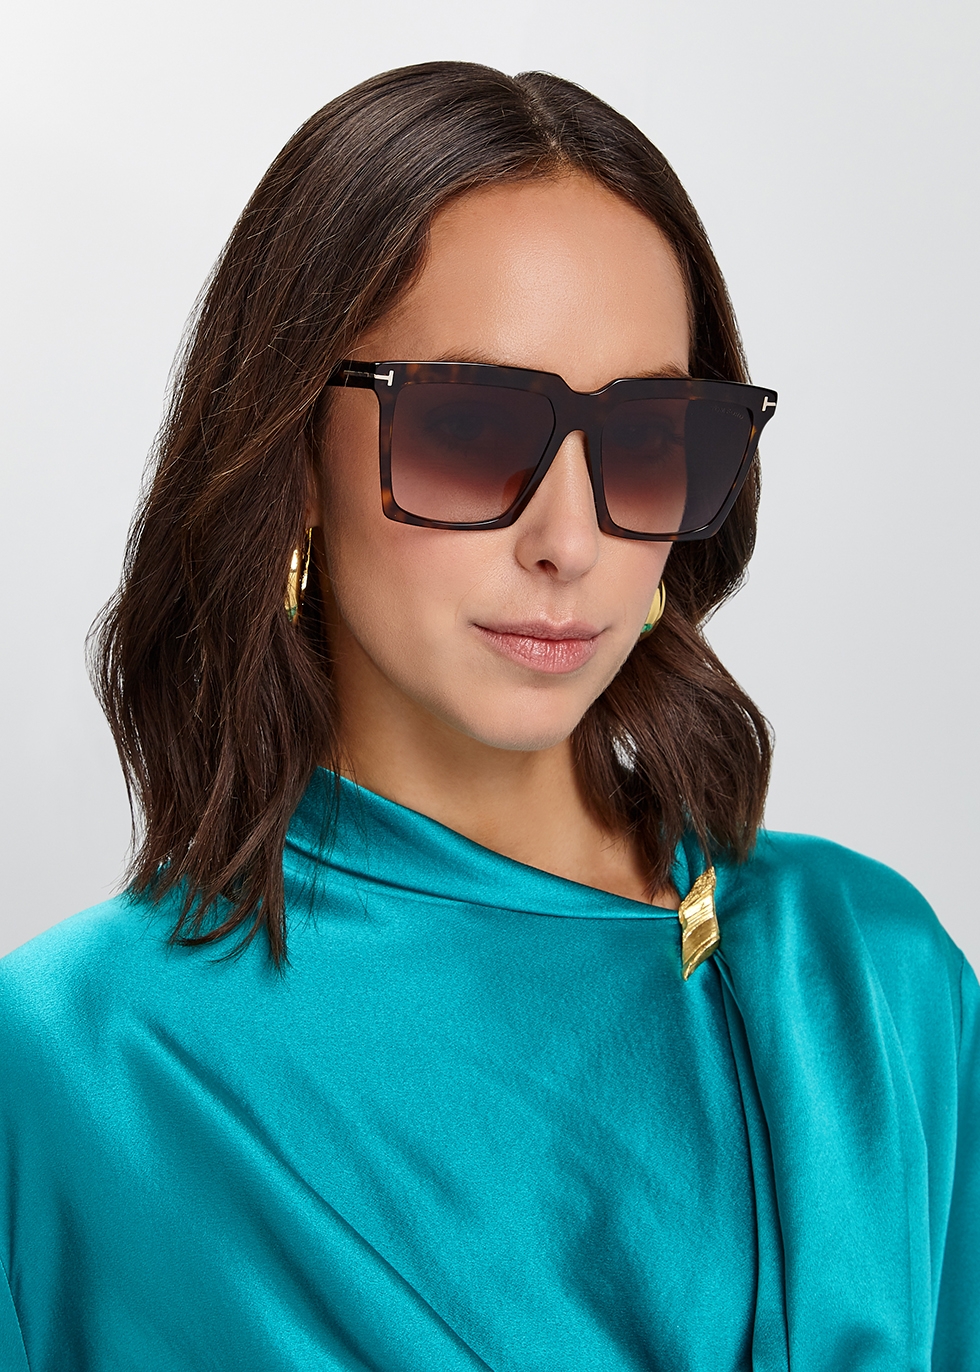 Tom Ford Sabrina Sunglasses Best Sale, 54% OFF | espirituviajero.com